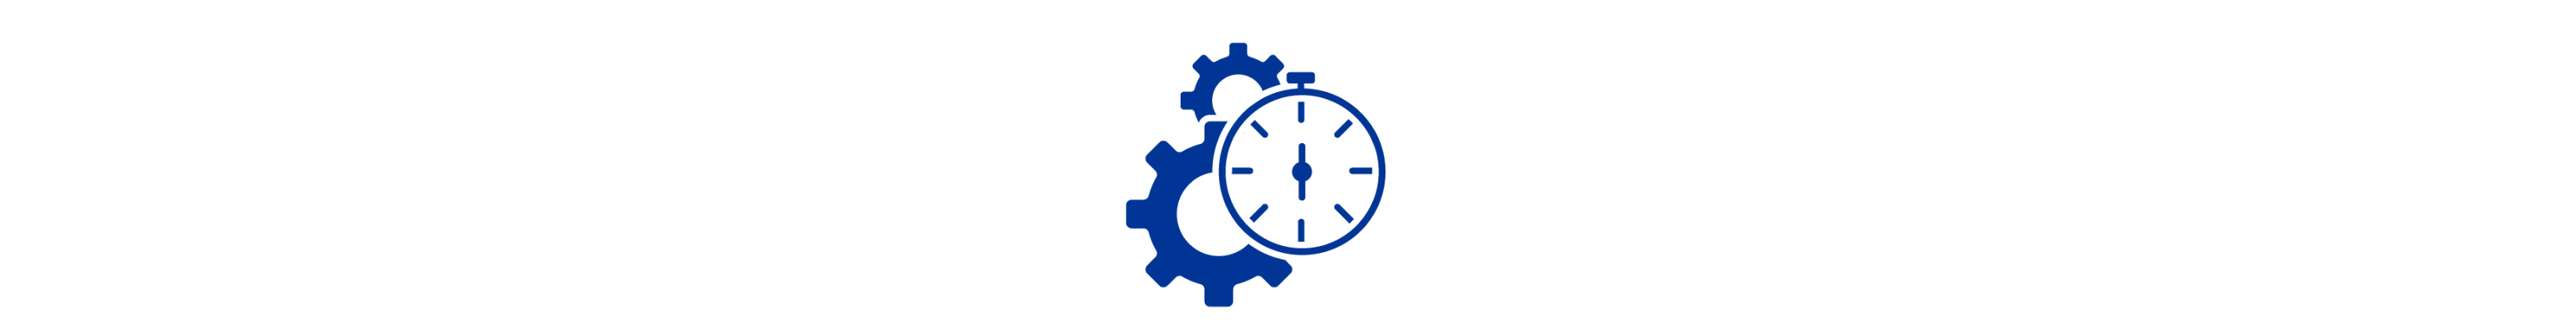 Icona blu di due ingranaggi dietro un cronometro.